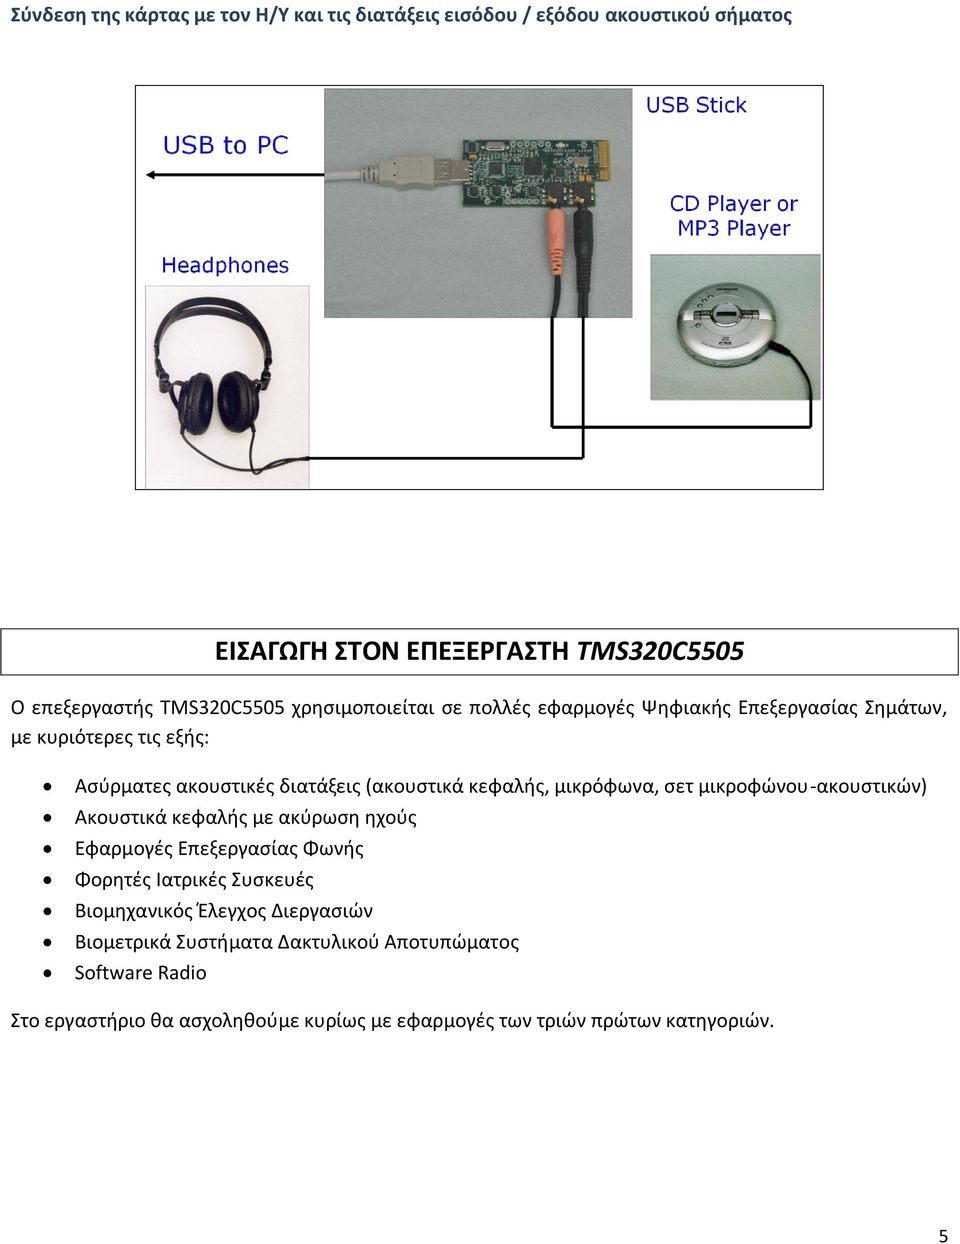 κεφαλής, μικρόφωνα, σετ μικροφώνου-ακουστικών) Ακουστικά κεφαλής με ακύρωση ηχούς Εφαρμογές Επεξεργασίας Φωνής Φορητές Ιατρικές Συσκευές